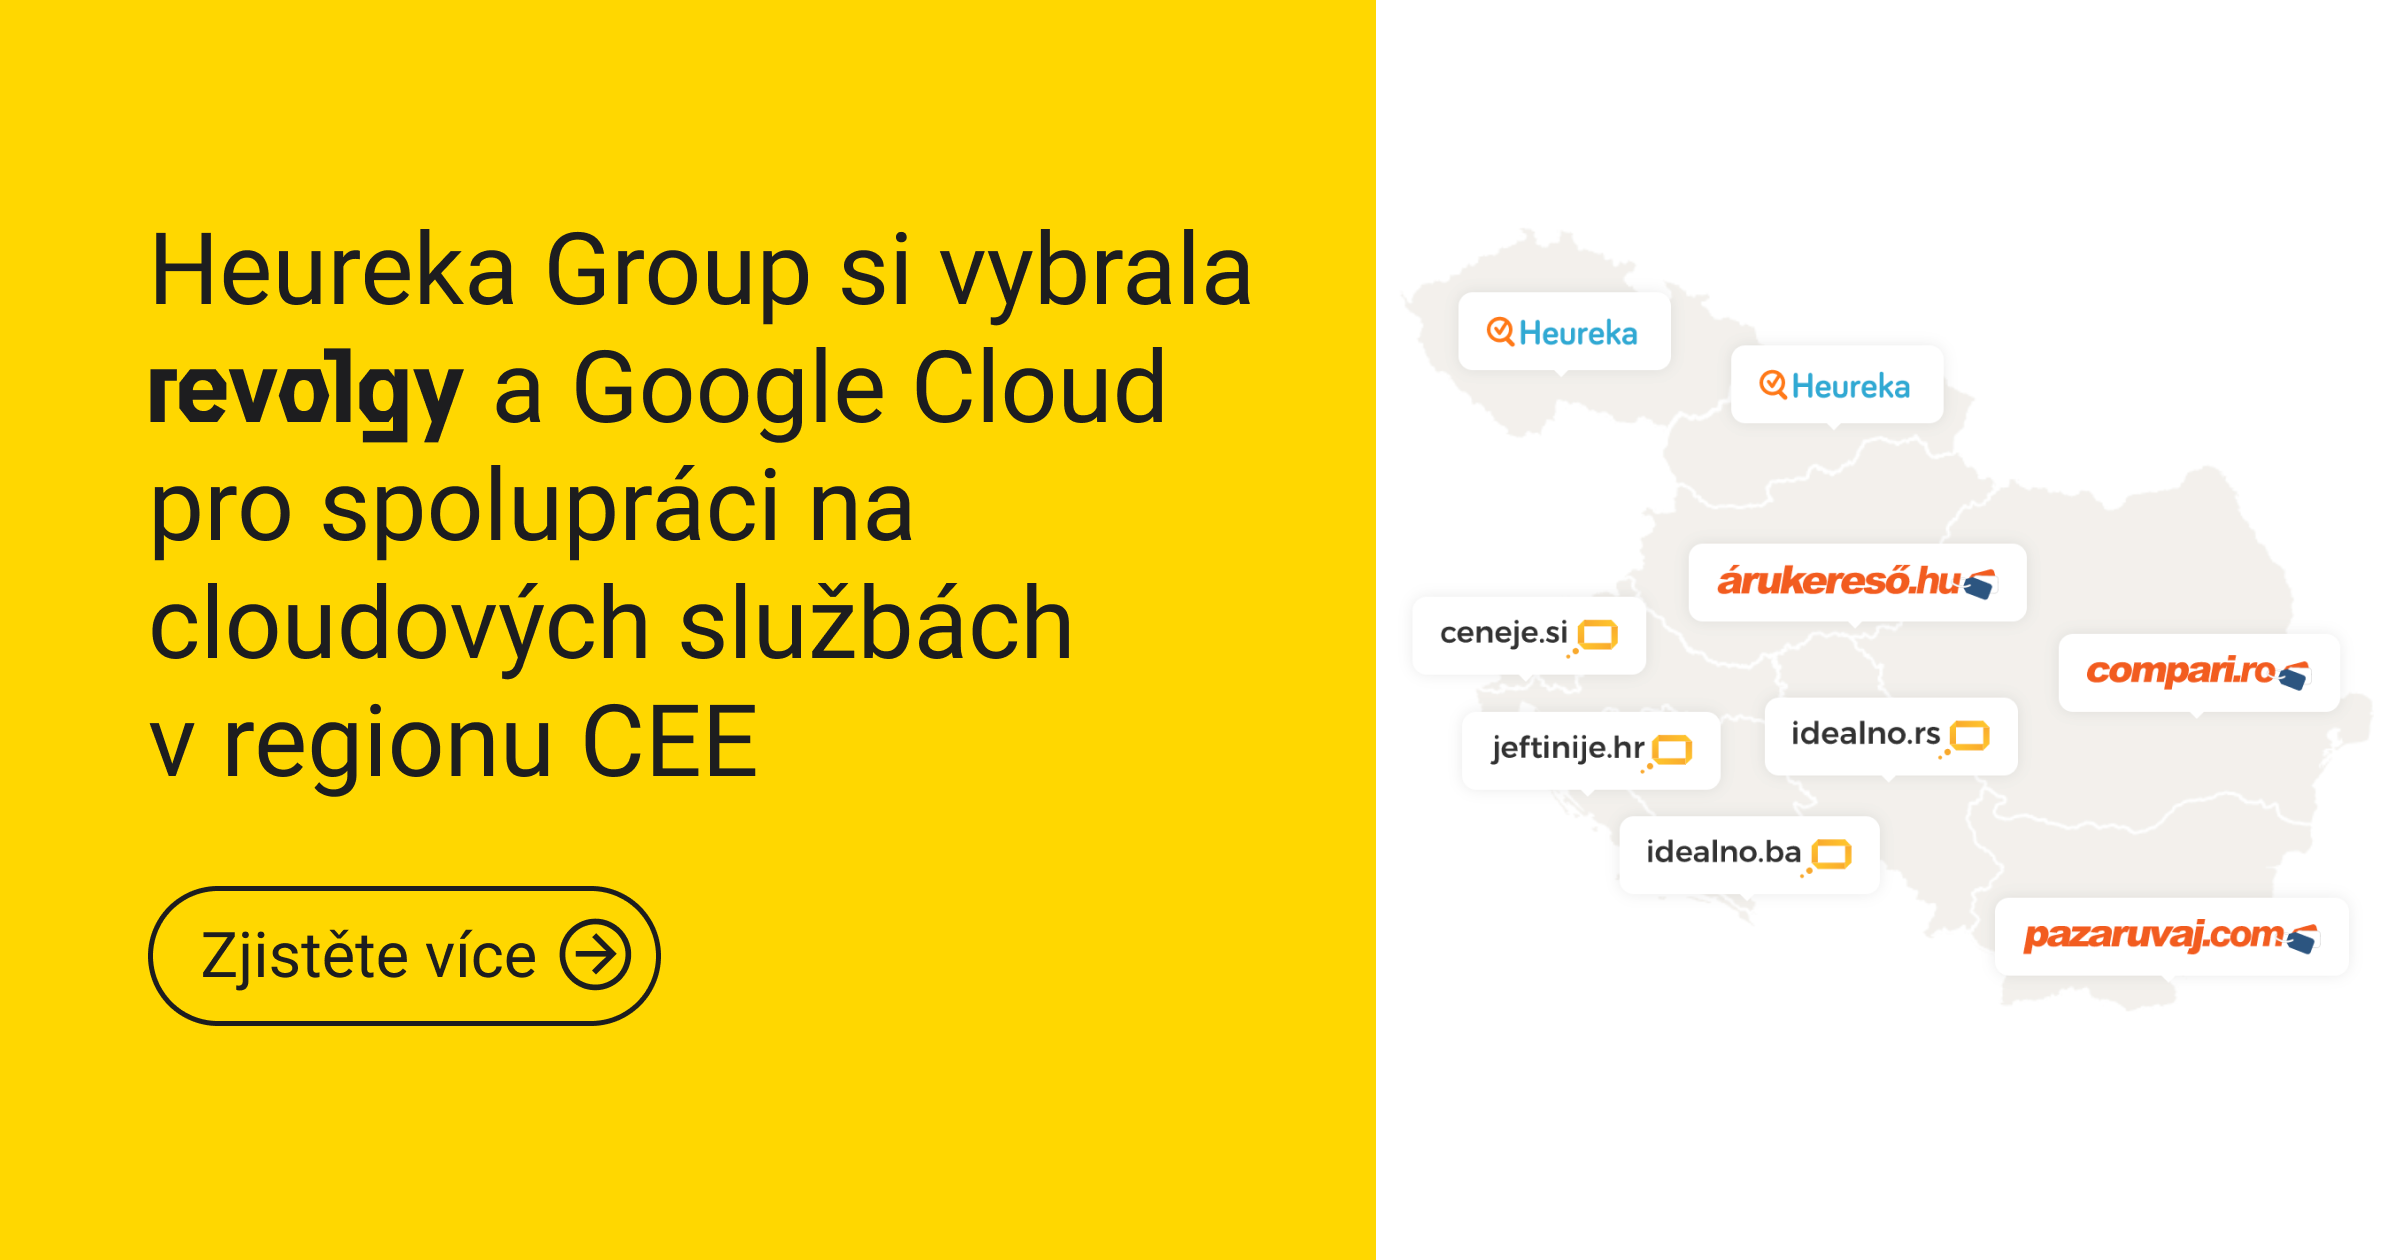 Heureka Group si vybrala Revolgy a Google Cloud pro nové projekty v regionu CEE